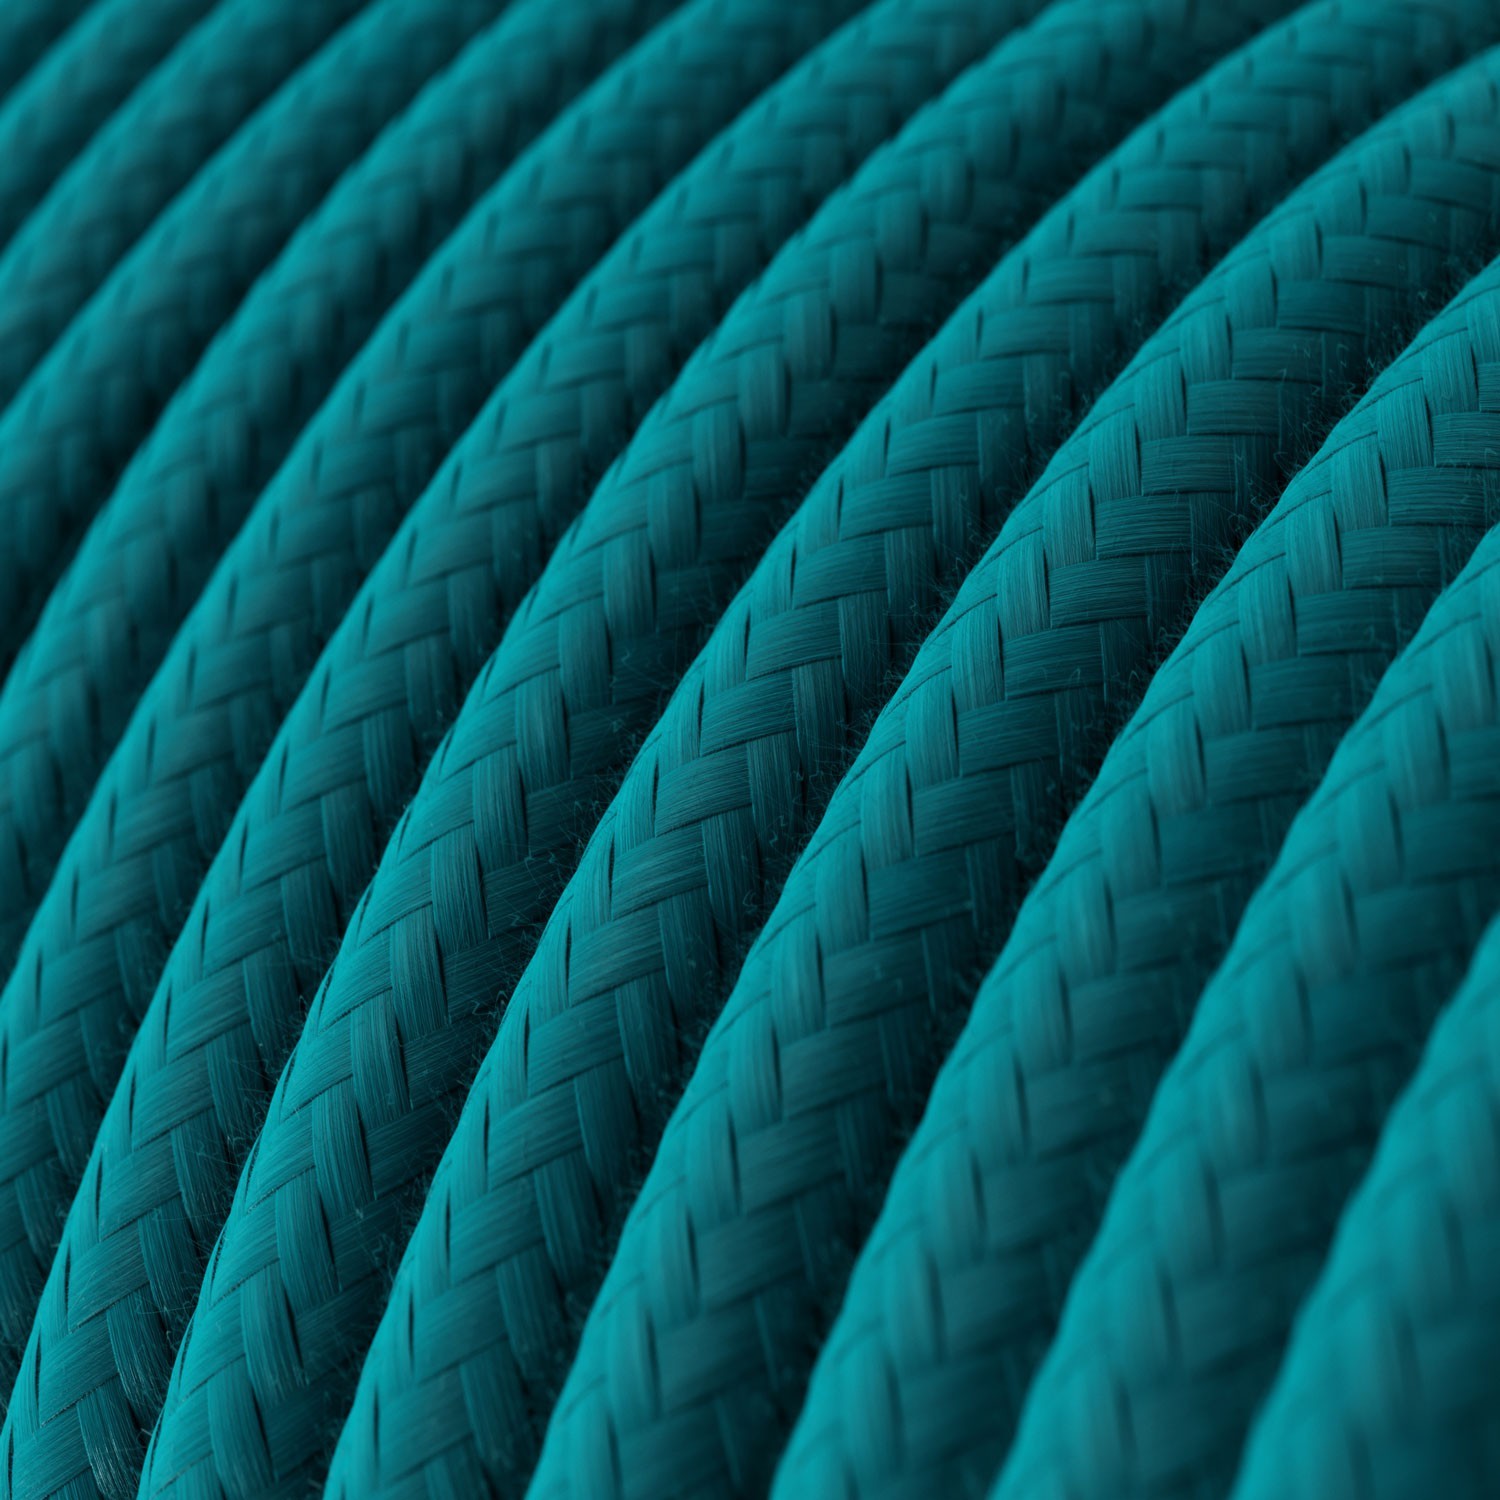 Okrúhly textilný elektrický kábel, bavlna, RC21 modrý Cerulean